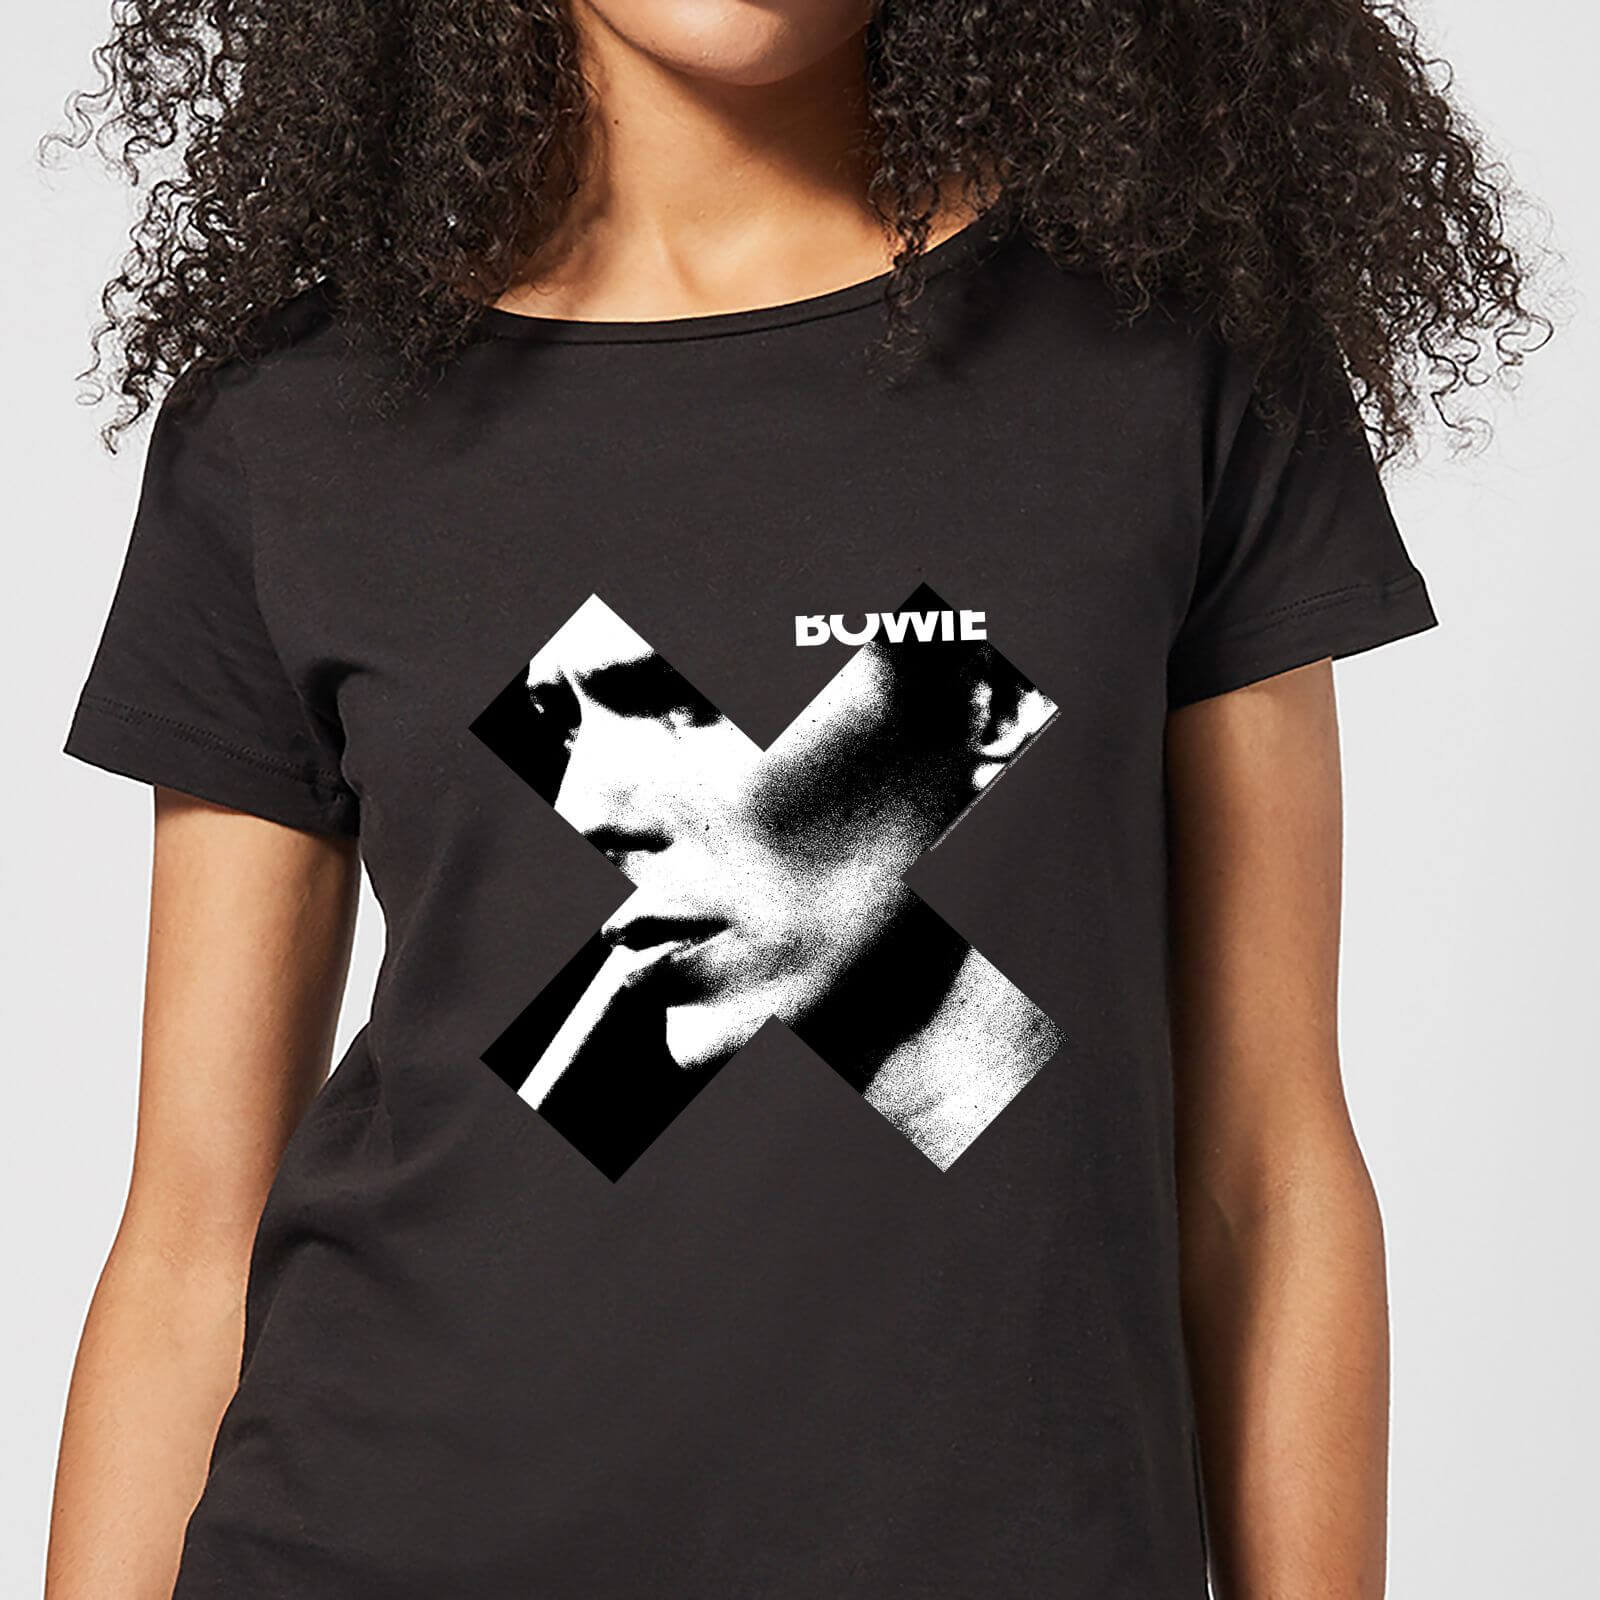 David Bowie X Smoke Women's T-Shirt - Black - M - Black